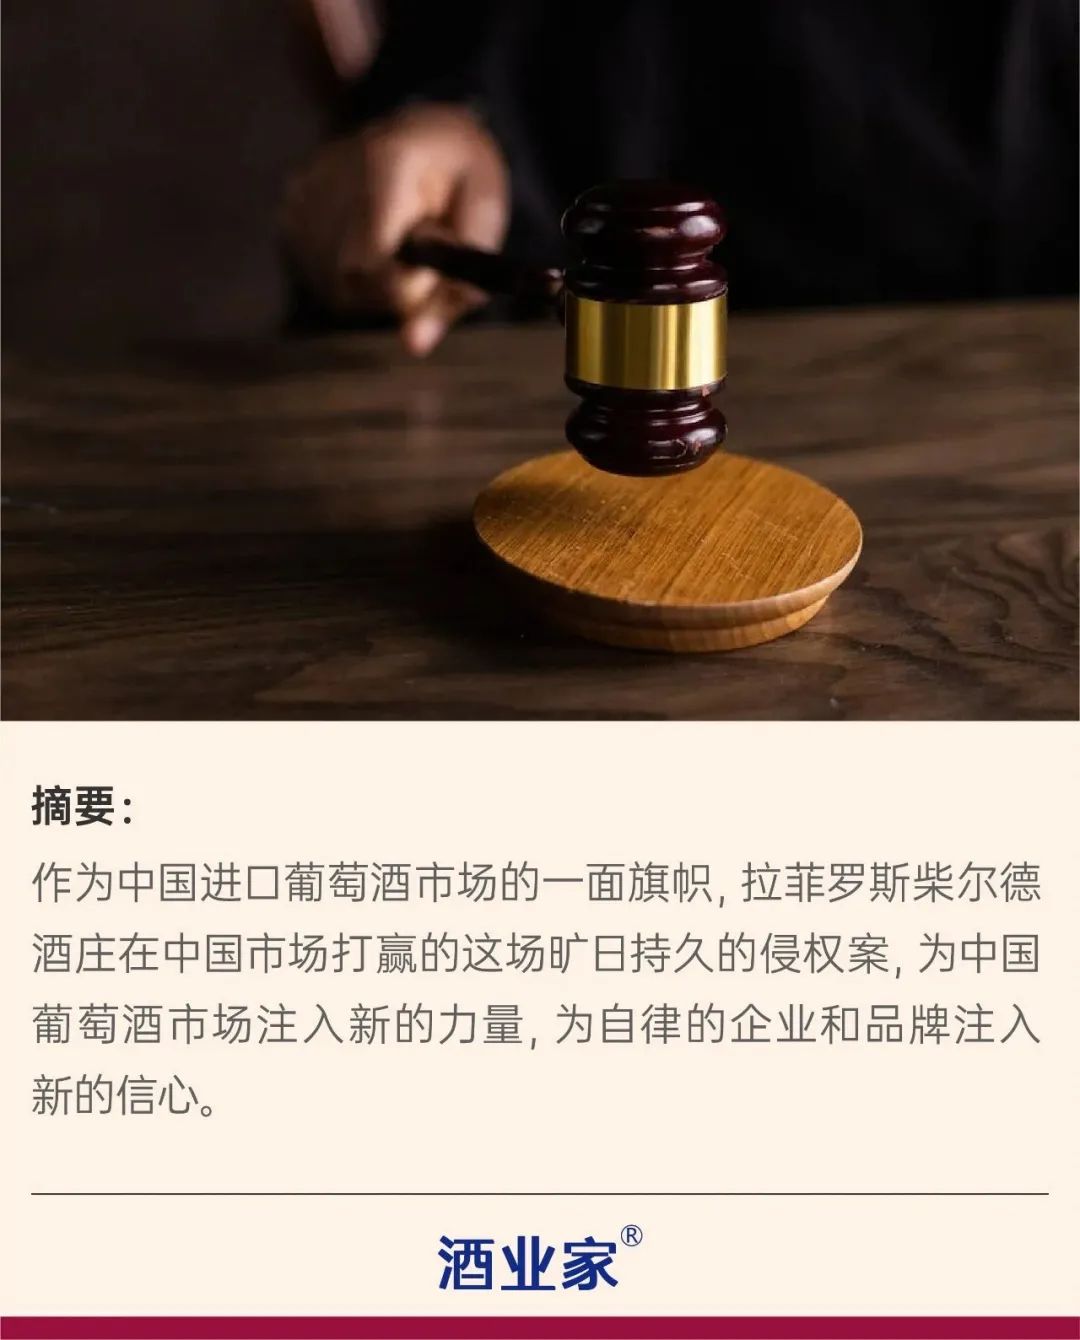 二、撤销江苏省高级人民法院(2017)苏民初5号民事判决第四项、第六项